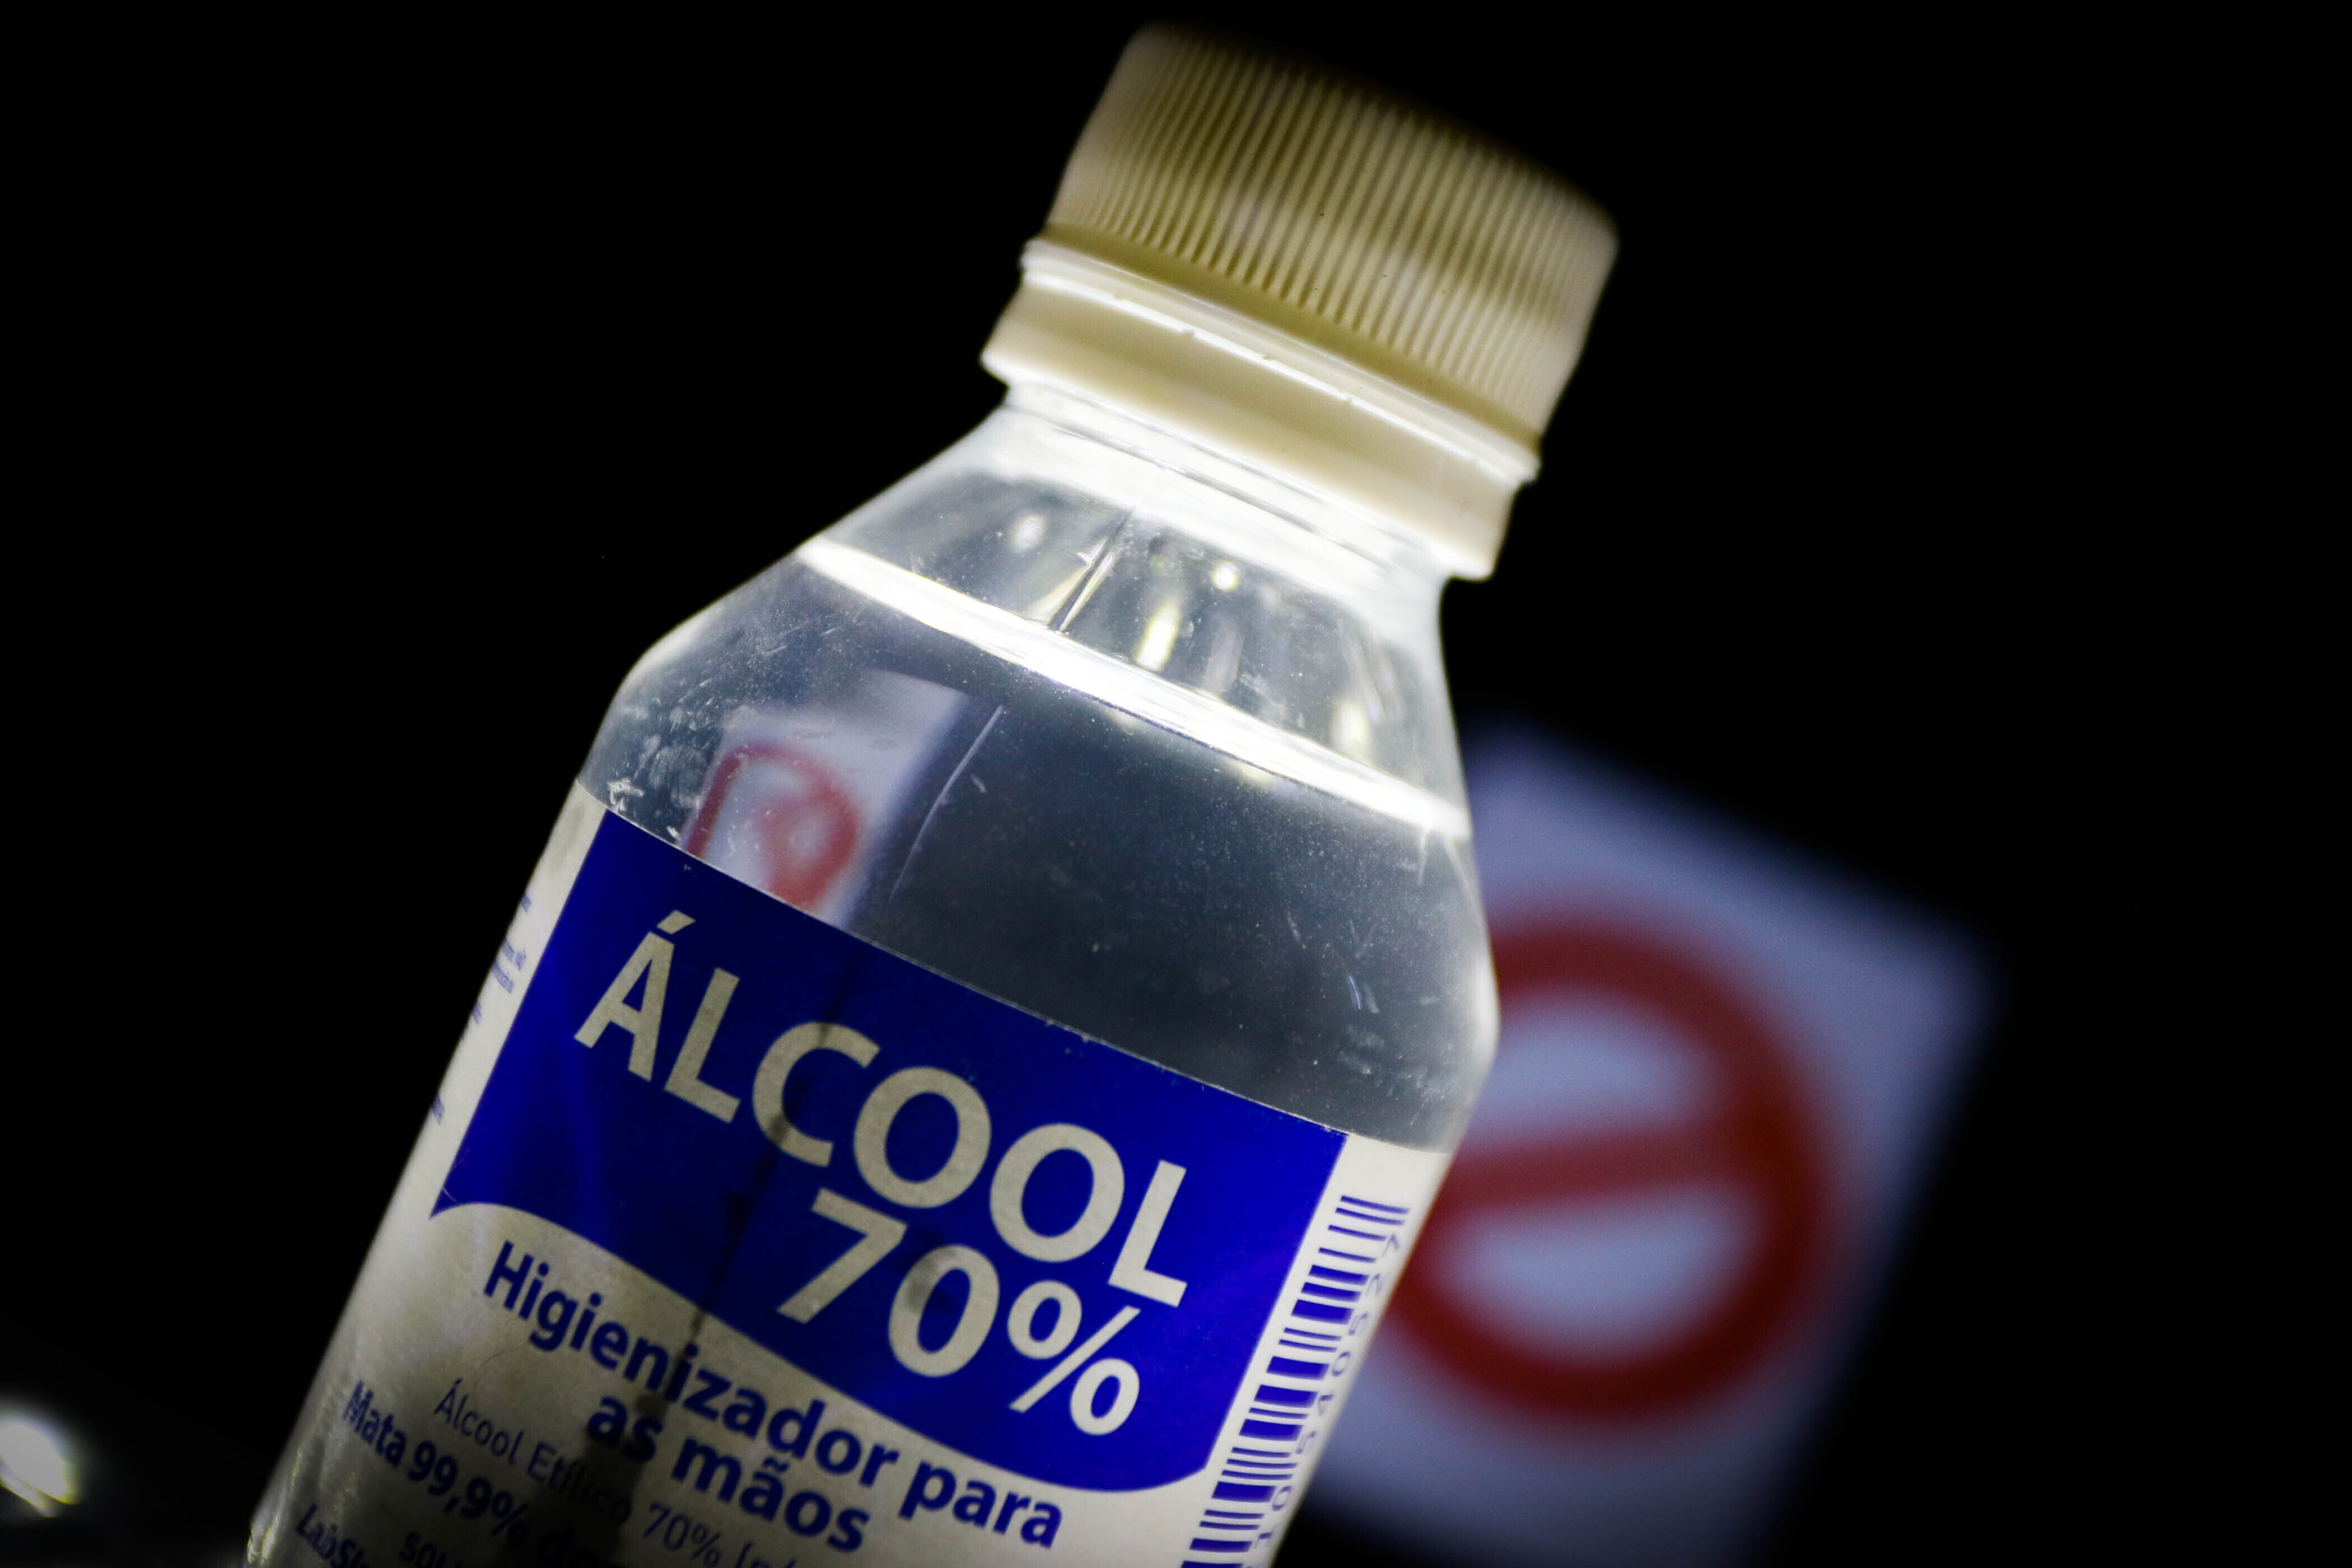 Justiça condena médico que aplicou álcool em vez de anestesia no corpo de paciente